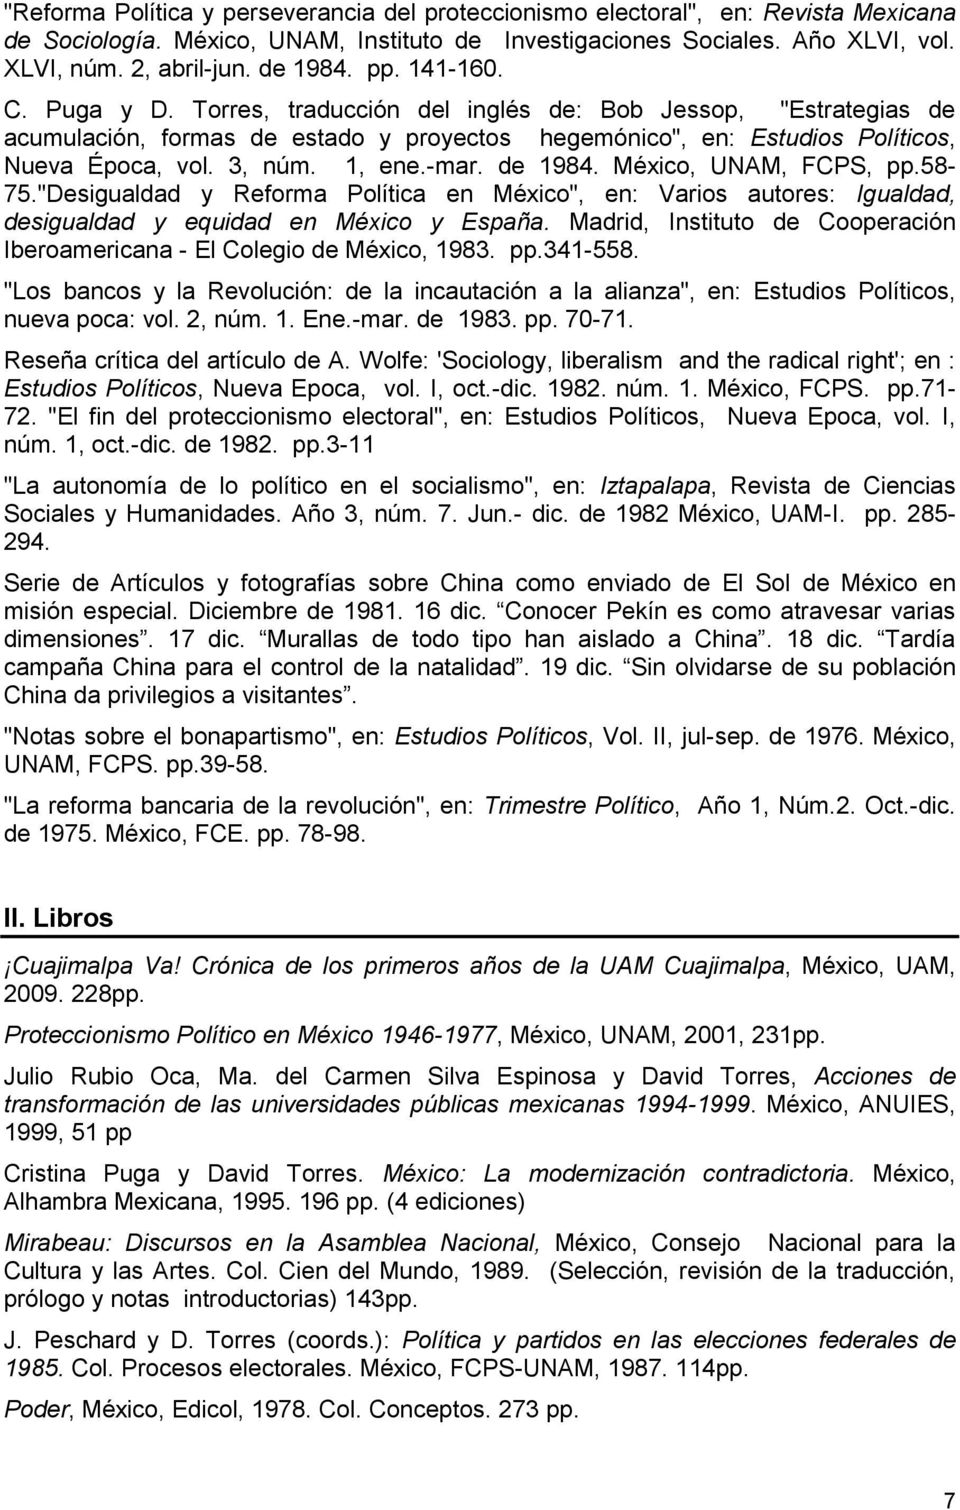 3, núm. 1, ene.-mar. de 1984. México, UNAM, FCPS, pp.58-75."desigualdad y Reforma Política en México", en: Varios autores: Igualdad, desigualdad y equidad en México y España.